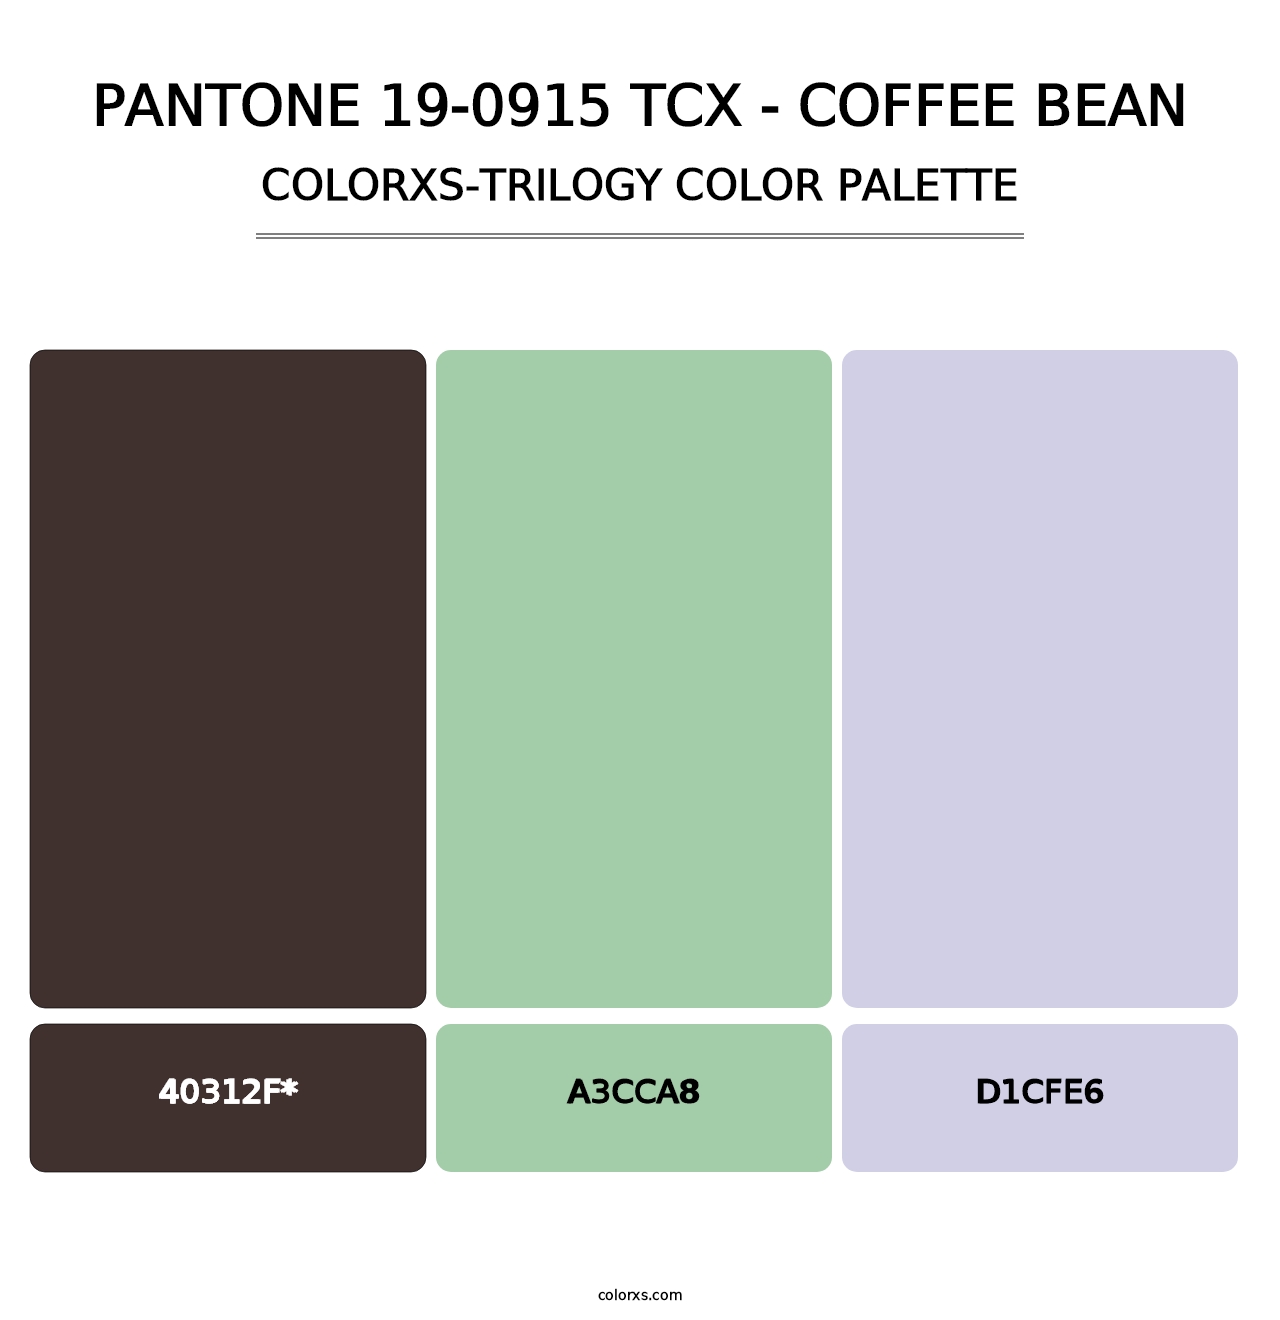 PANTONE 19-0915 TCX - Coffee Bean - Colorxs Trilogy Palette